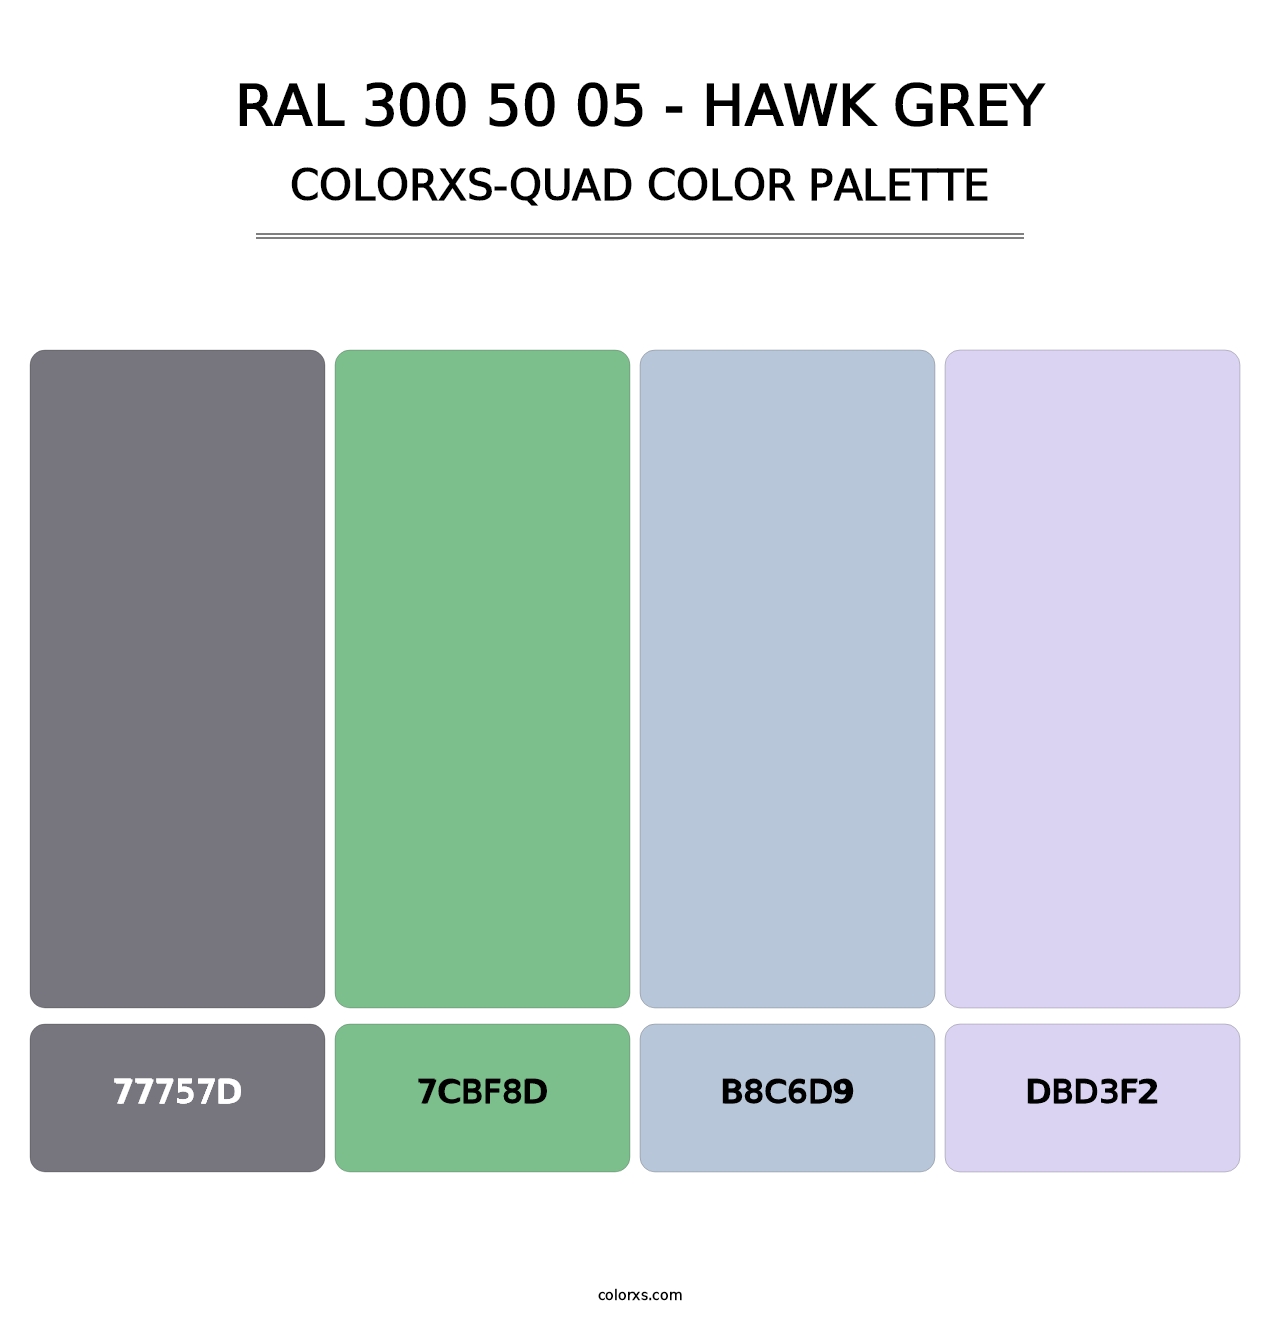 RAL 300 50 05 - Hawk Grey - Colorxs Quad Palette